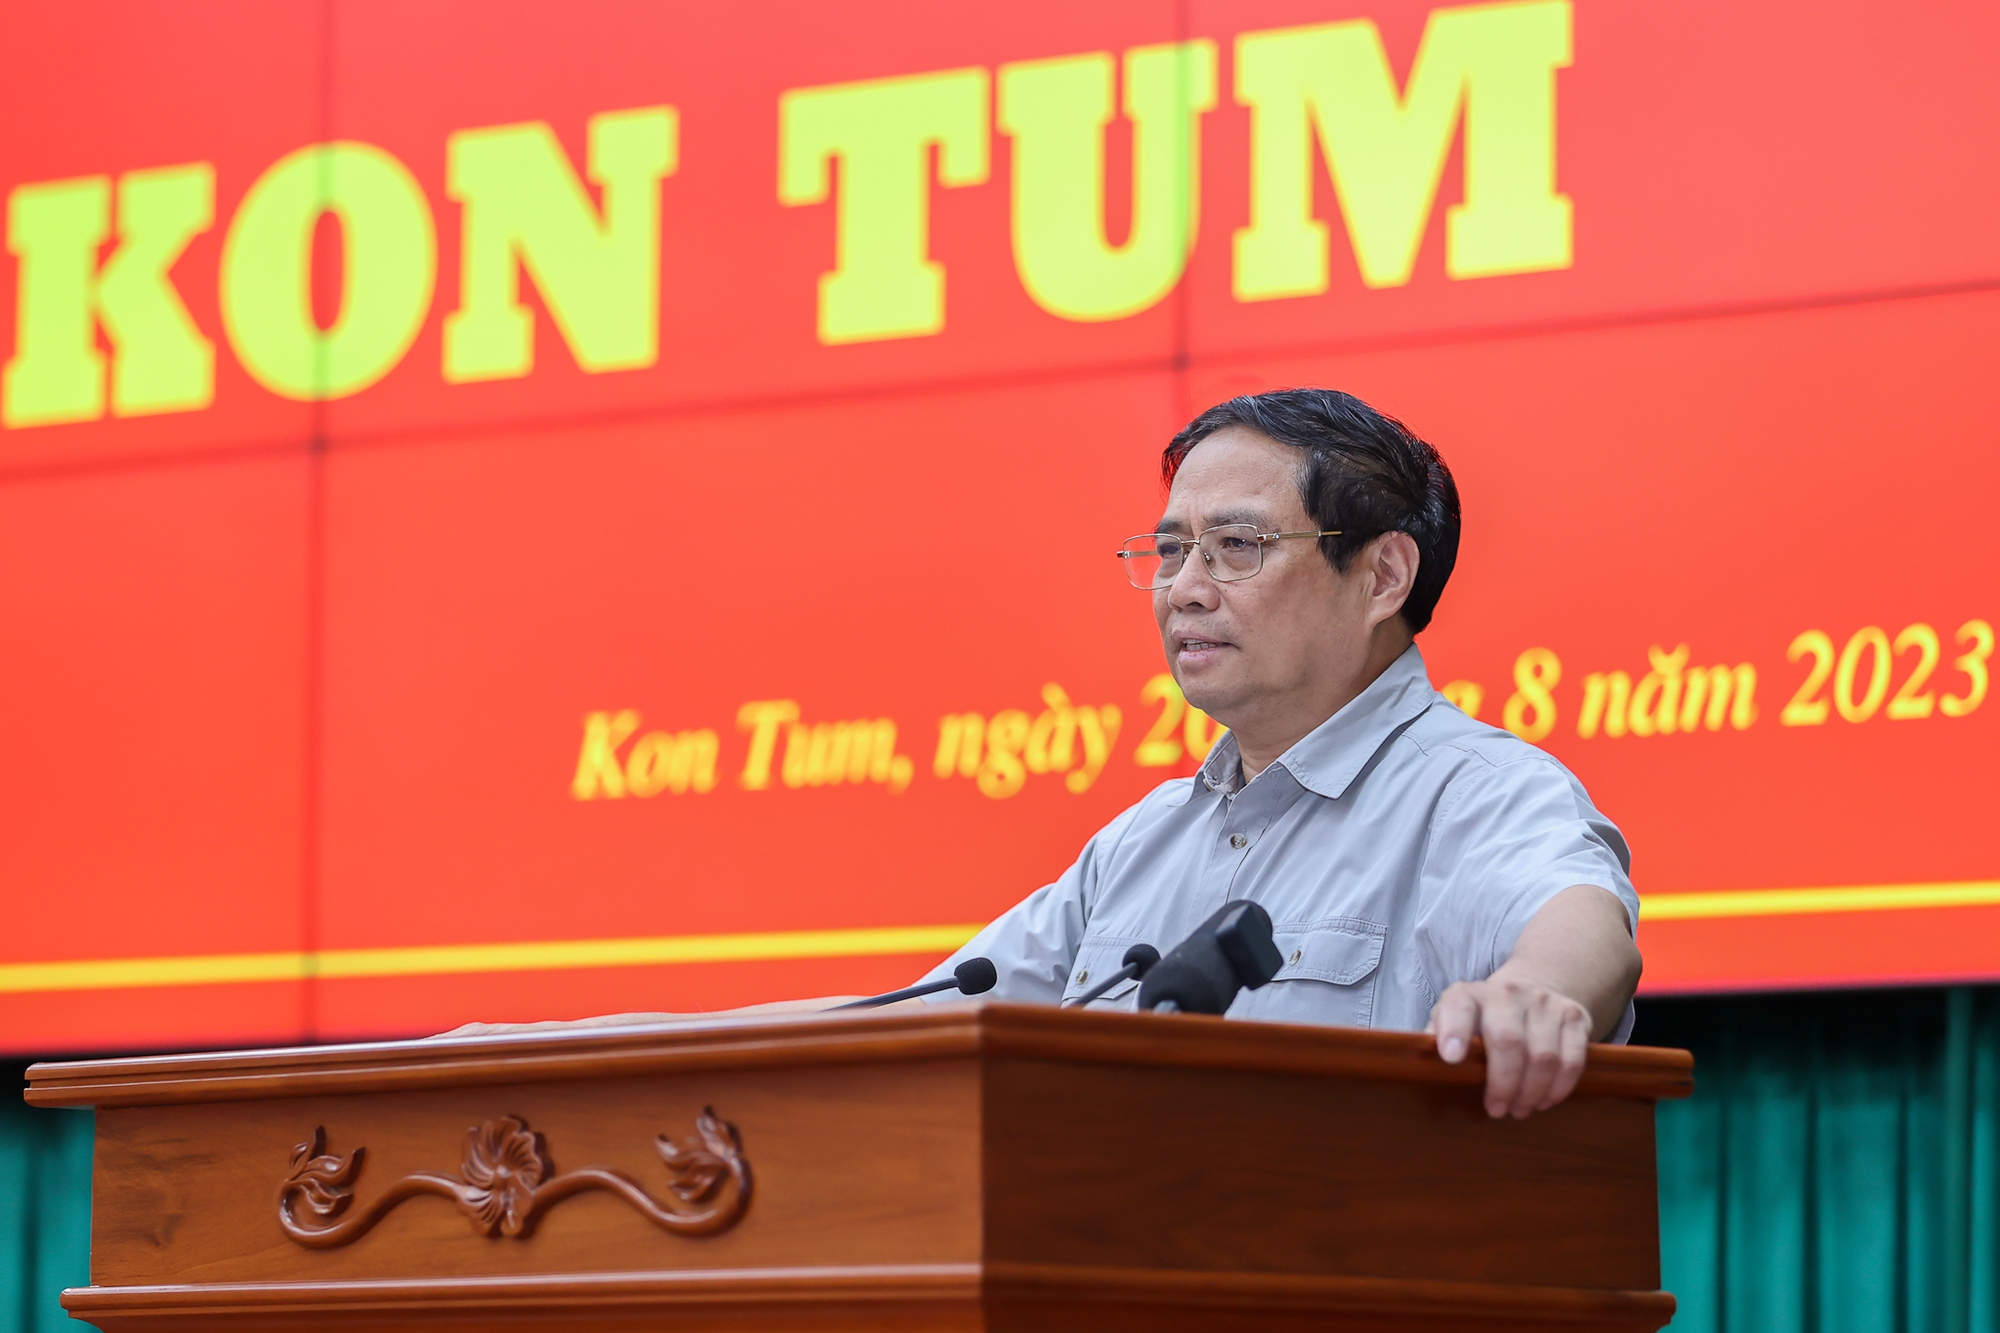 Đồng ý chủ trương bổ sung cao tốc Quảng Ngãi - Kon Tum, sân bay Măng Đen vào quy hoạch - Ảnh 1.